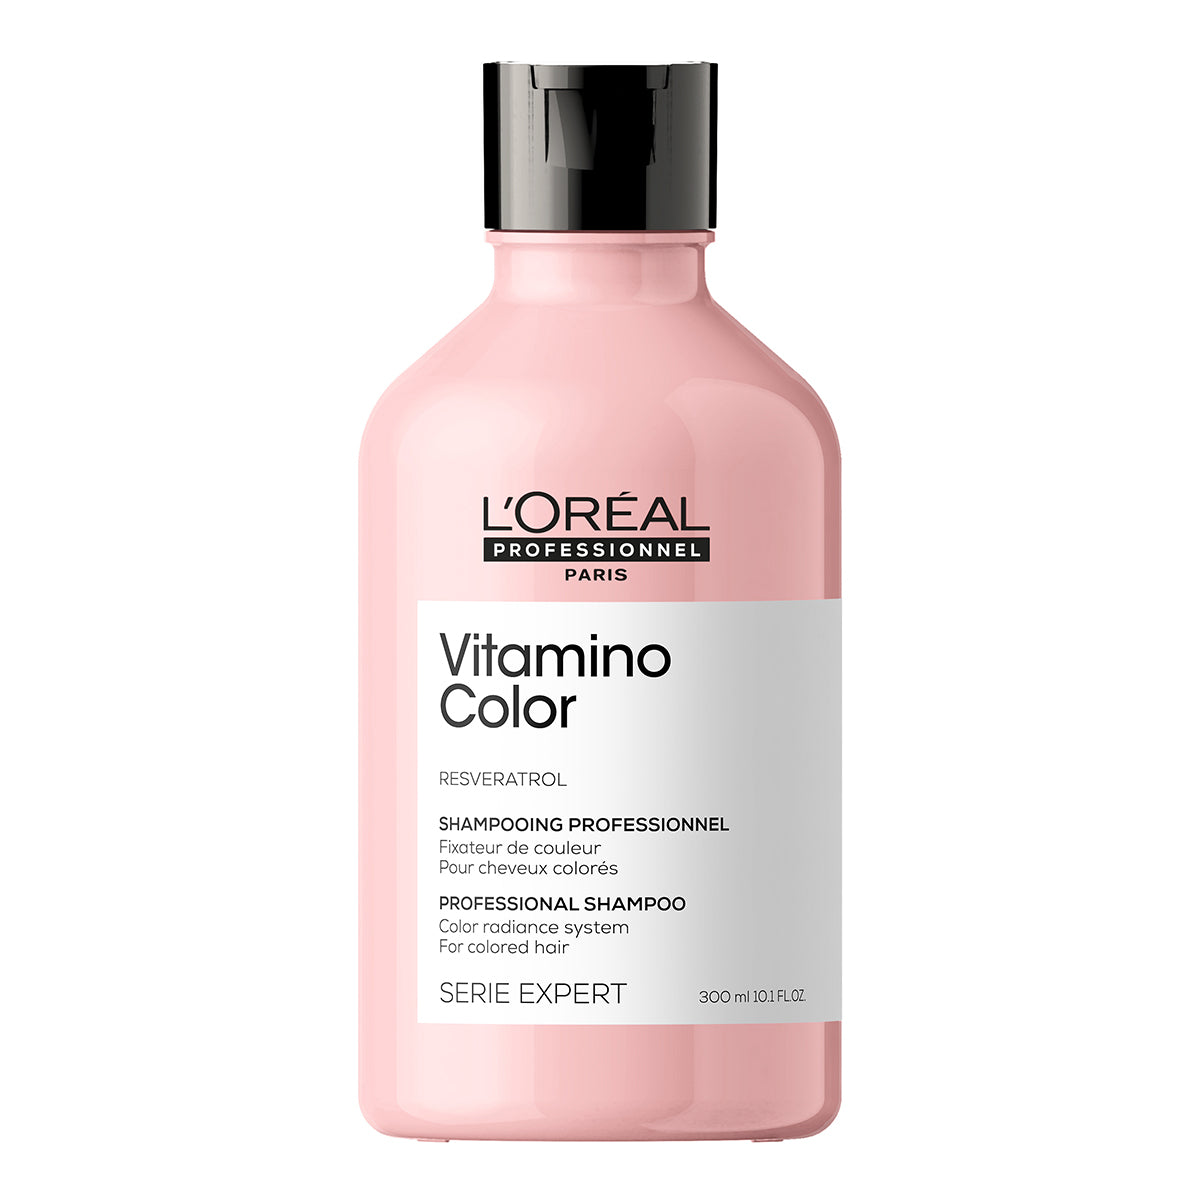 L’Oreal Vitamino Color Shampoo